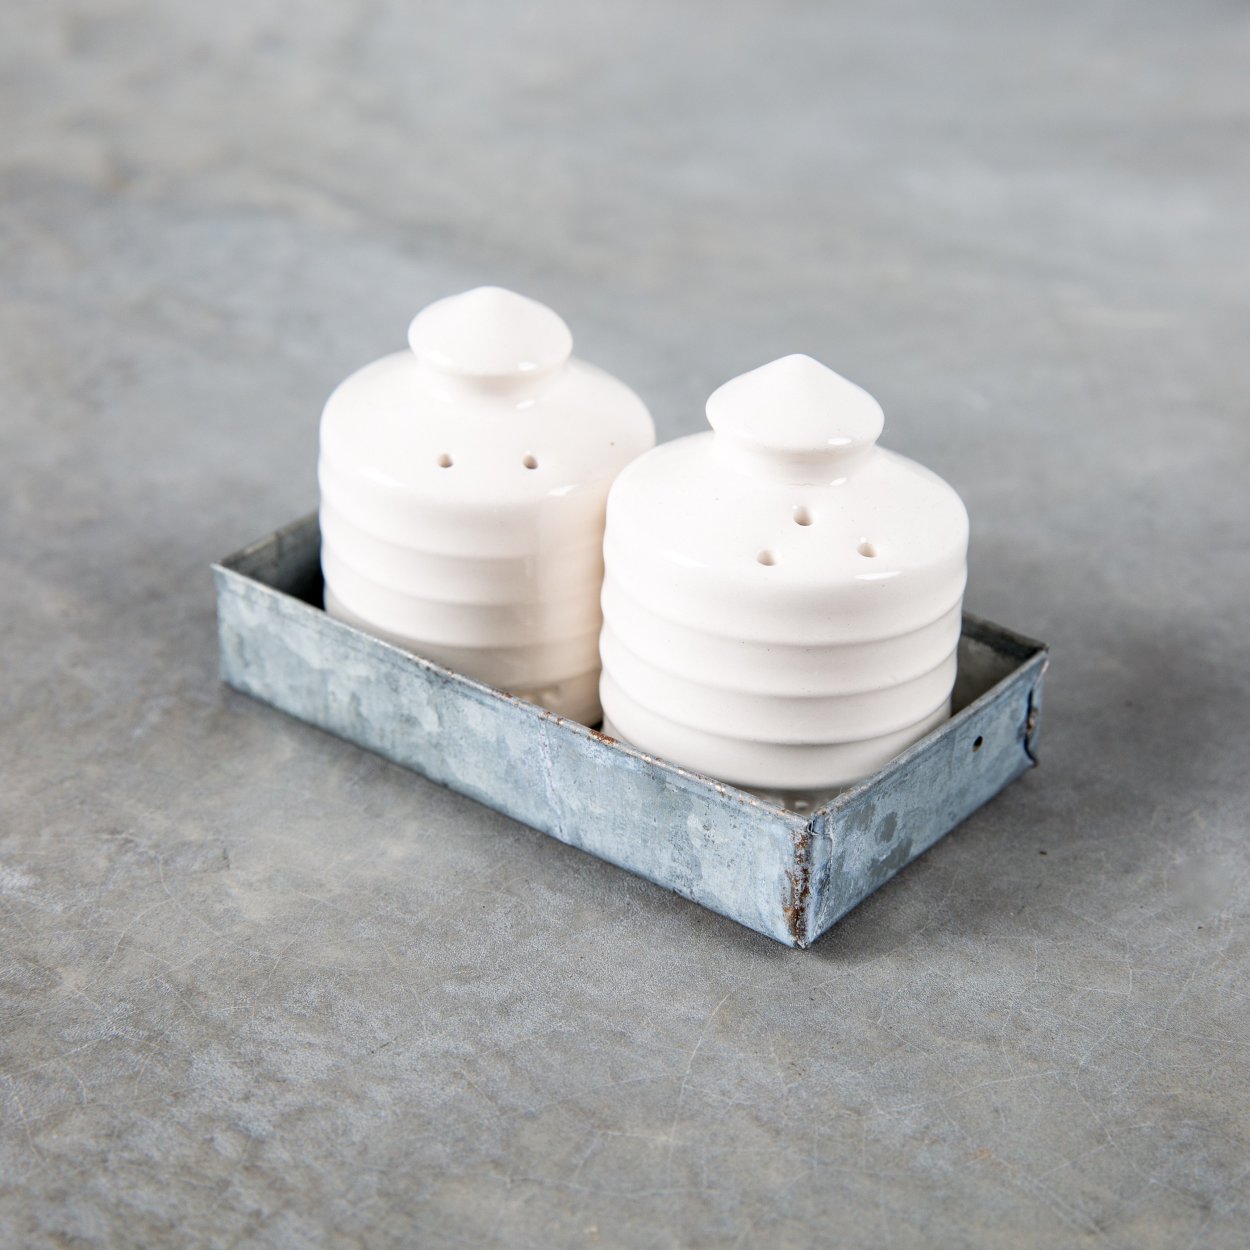 Better Homes & Gardens Porcelain Salt and Pepper Shaker Sets, 4 sets 